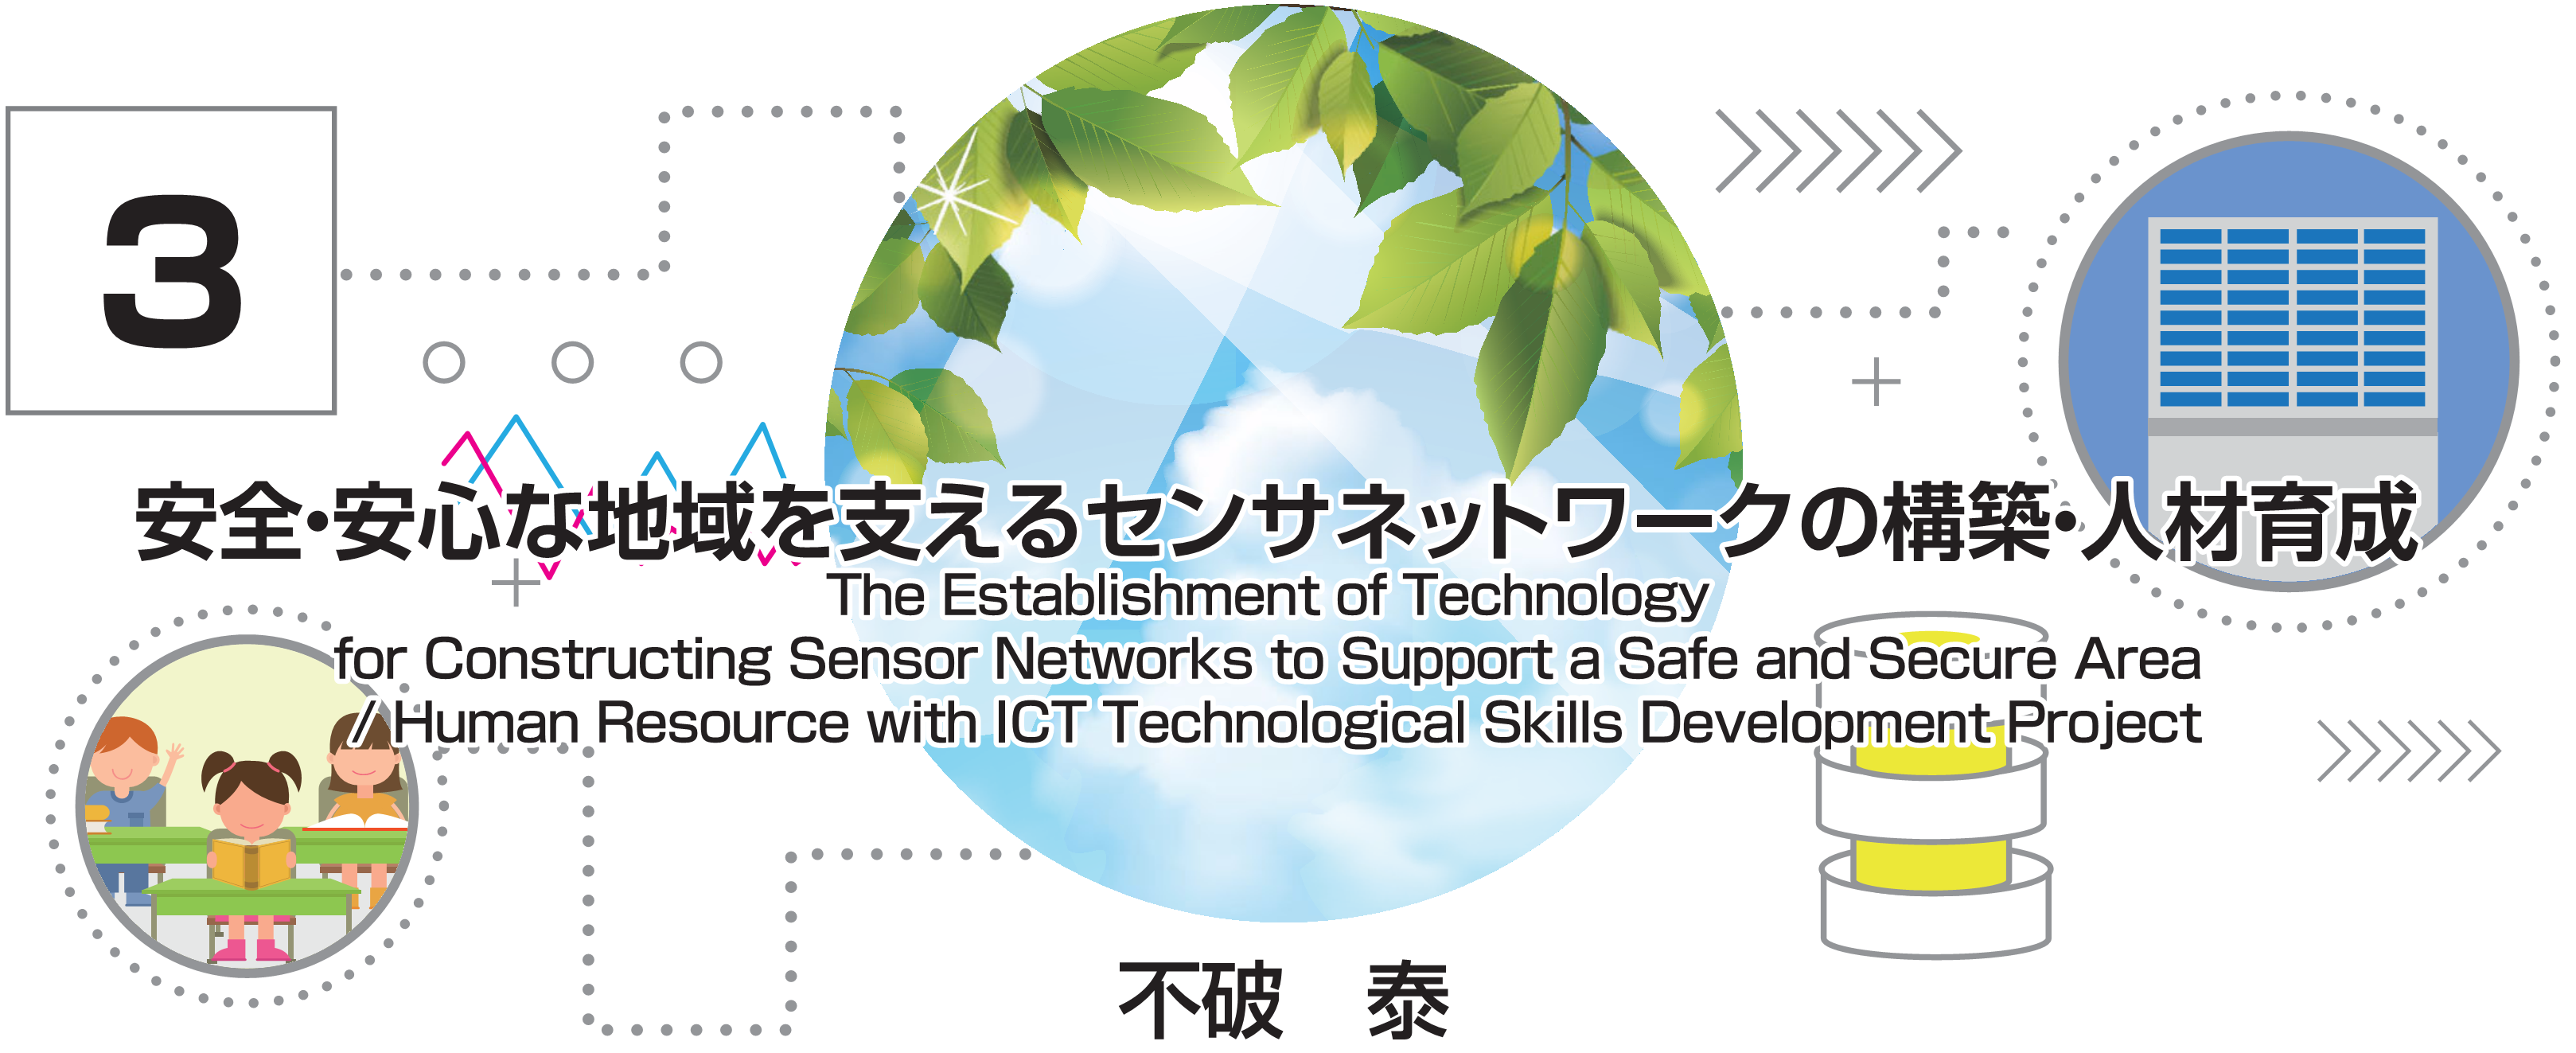 特別小特集 3. 安全・安心な地域を支えるセンサネットワークの構築・人材育成